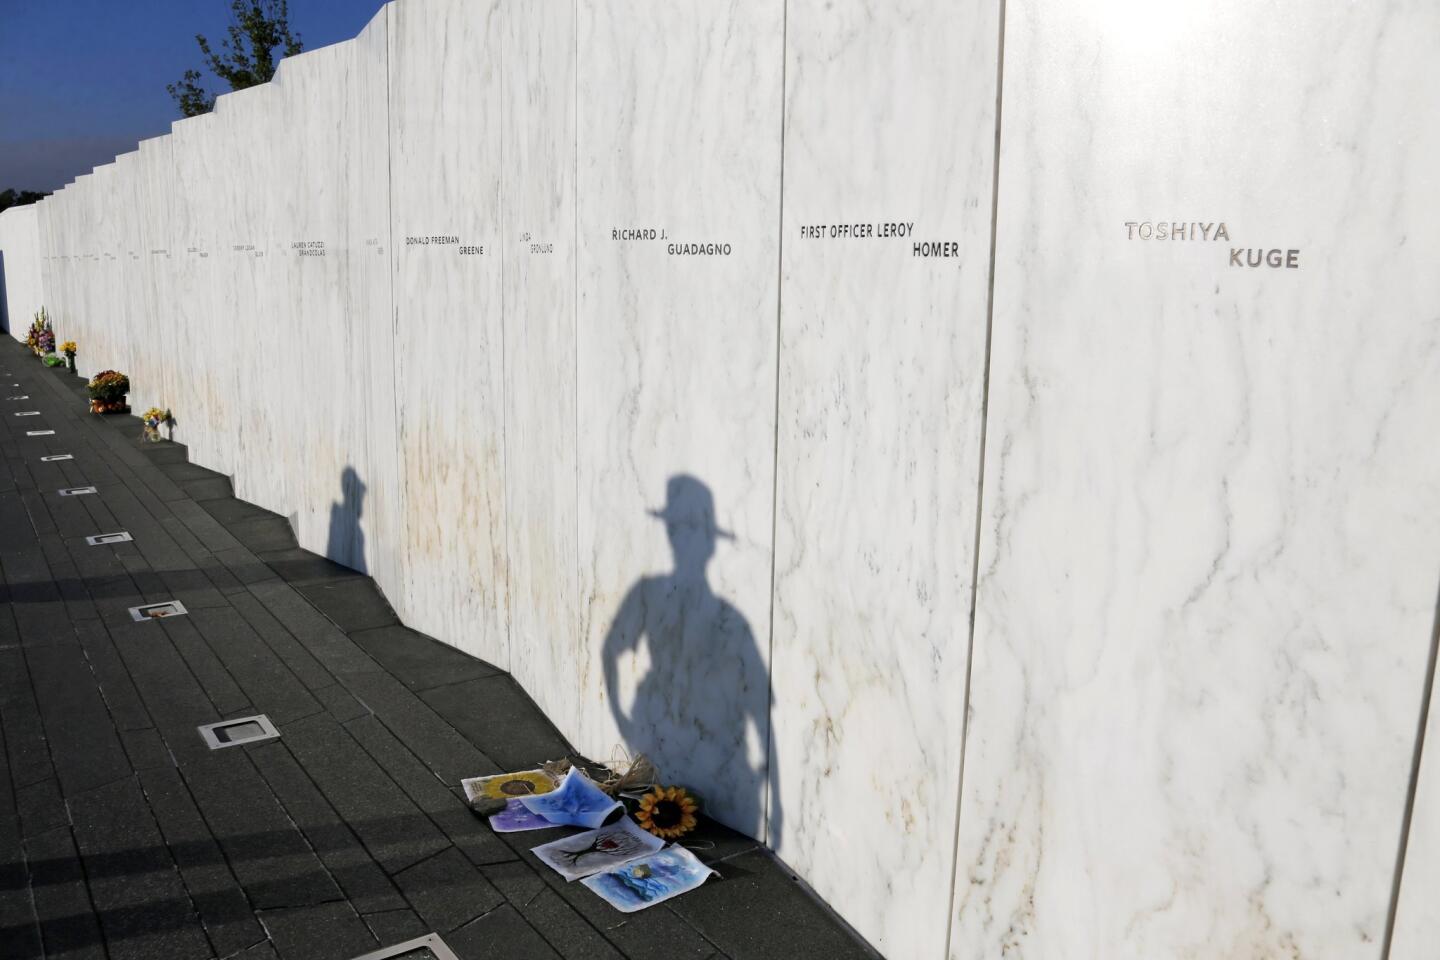 9/11 memorial observances